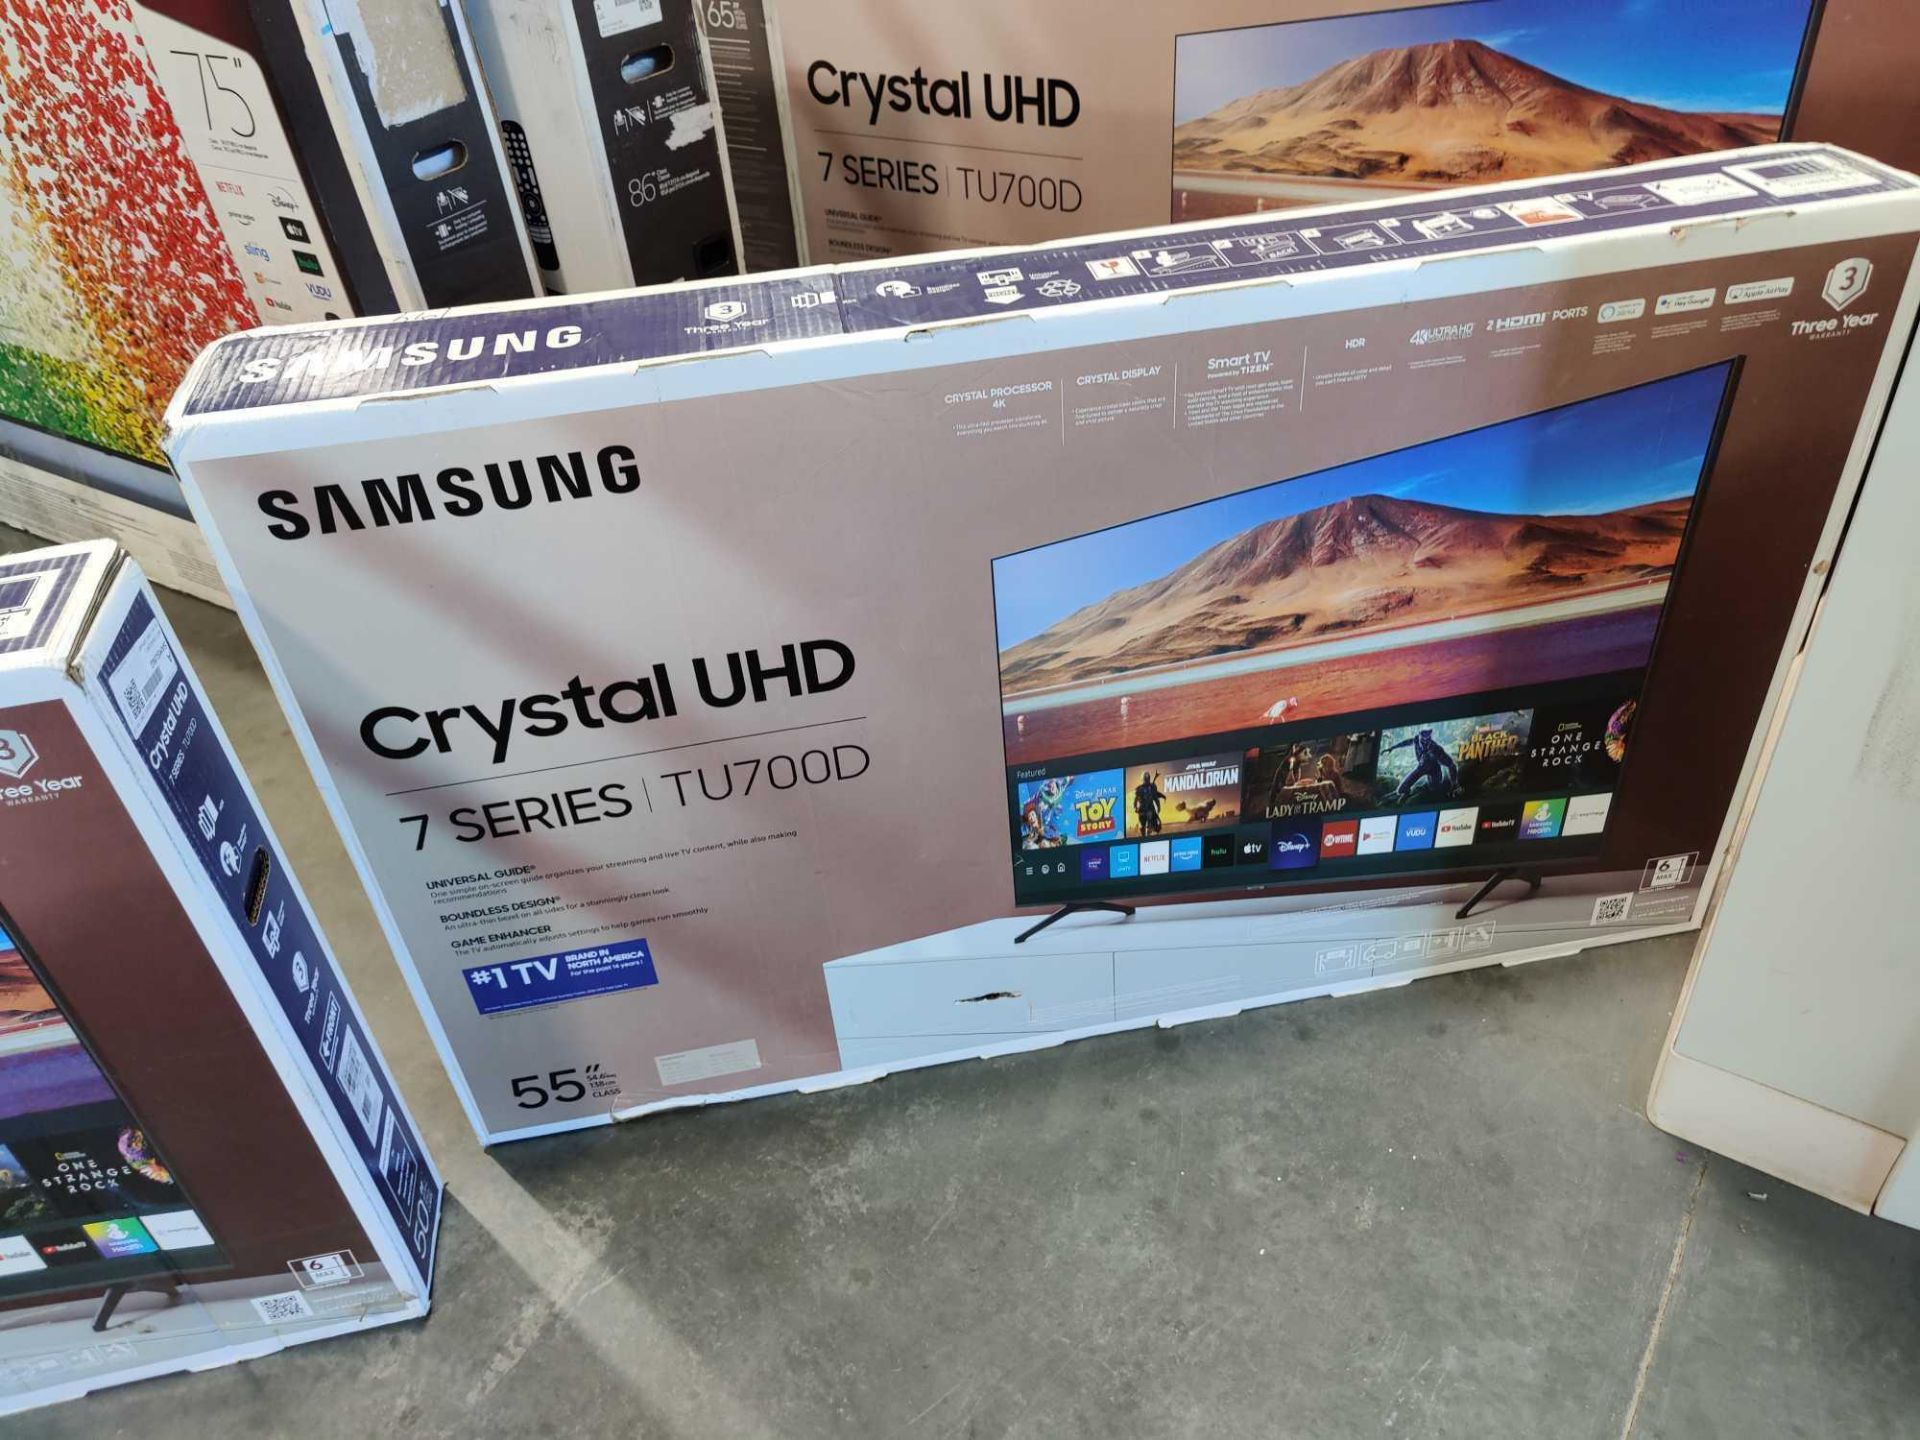 Two Samsung Crystal UHD - Image 5 of 5